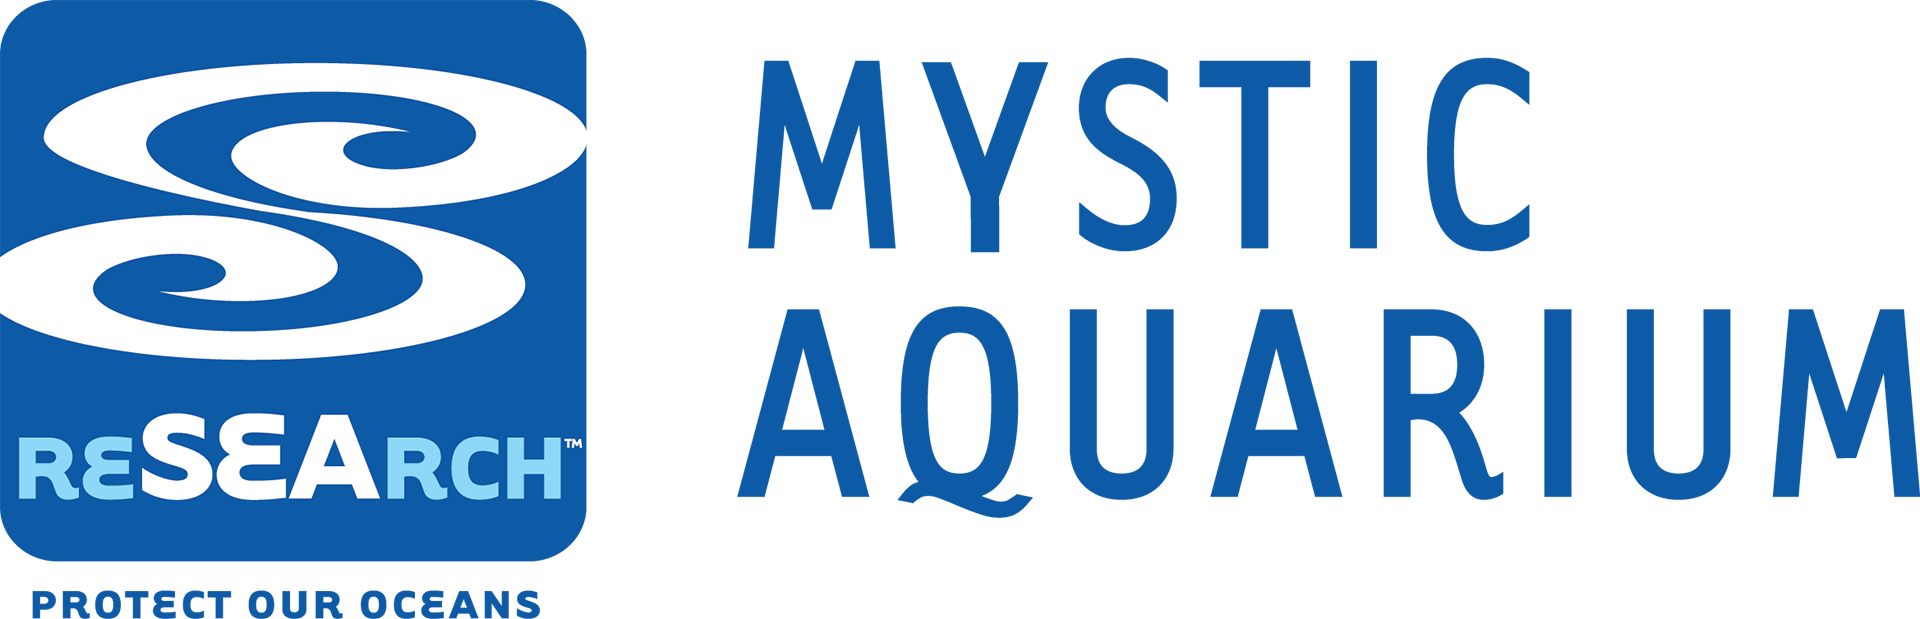 mystic-aquarium-logo